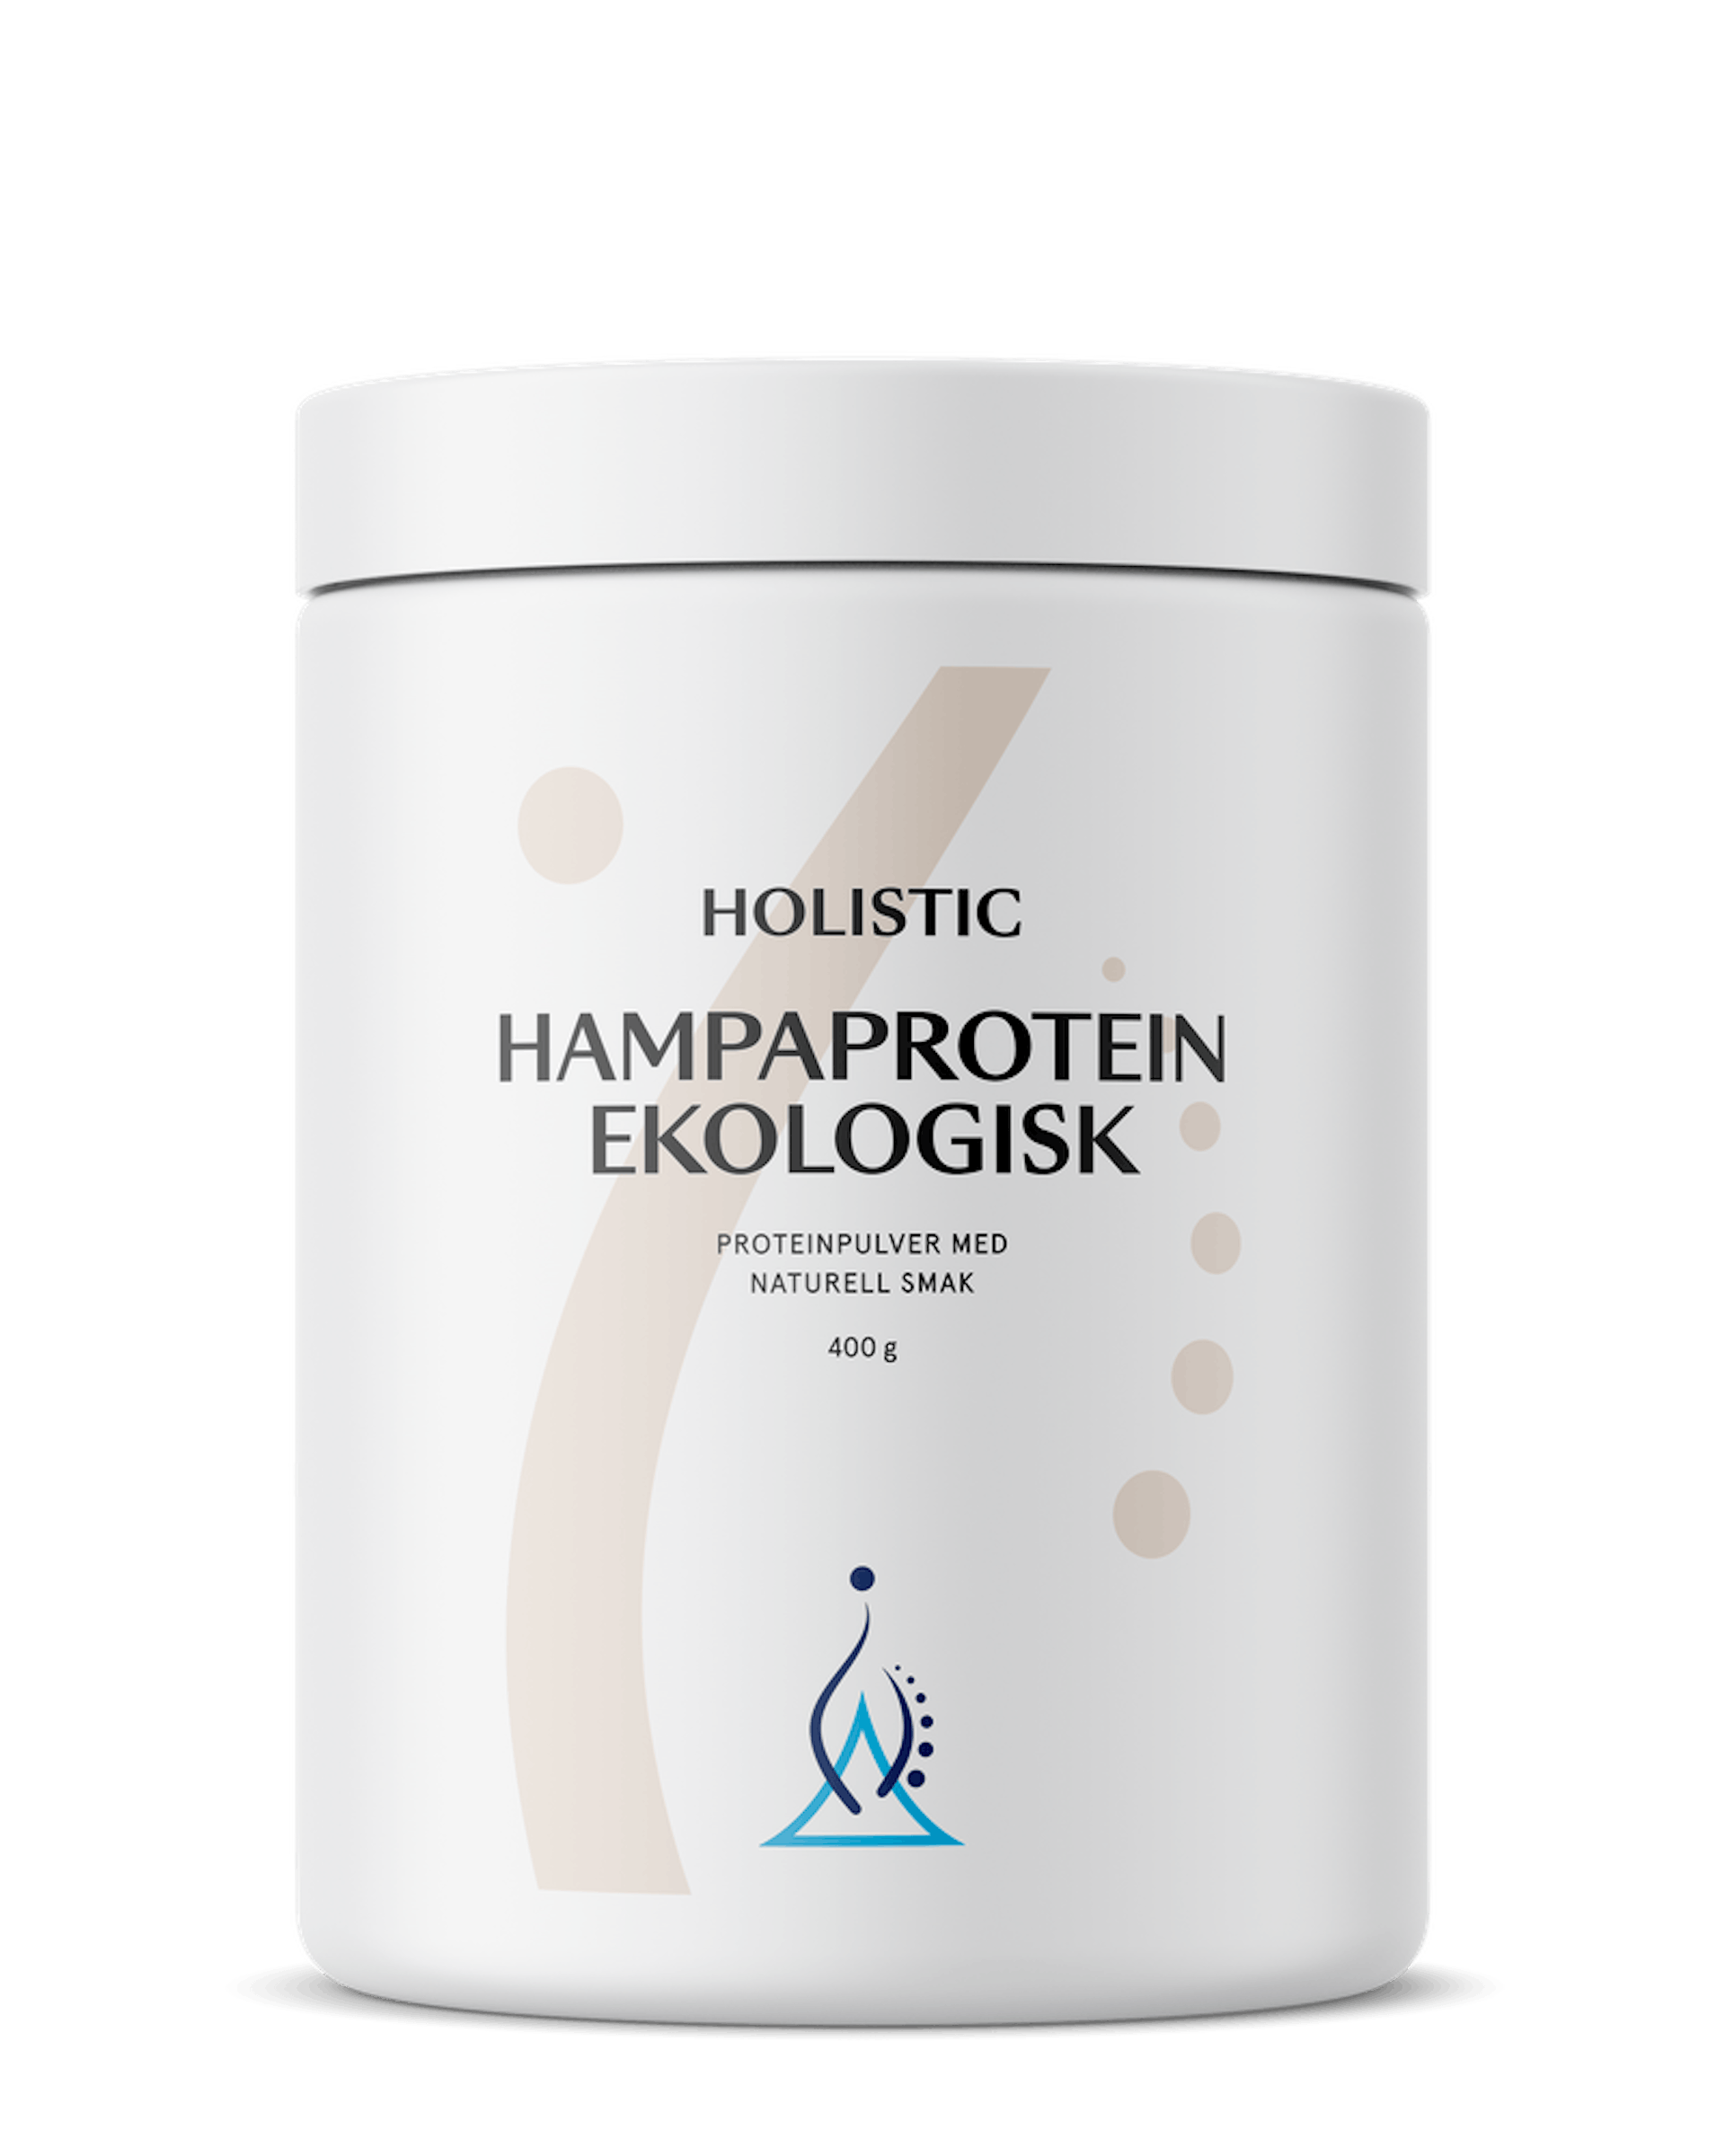 Hampaprotein ekologisk, 400 g